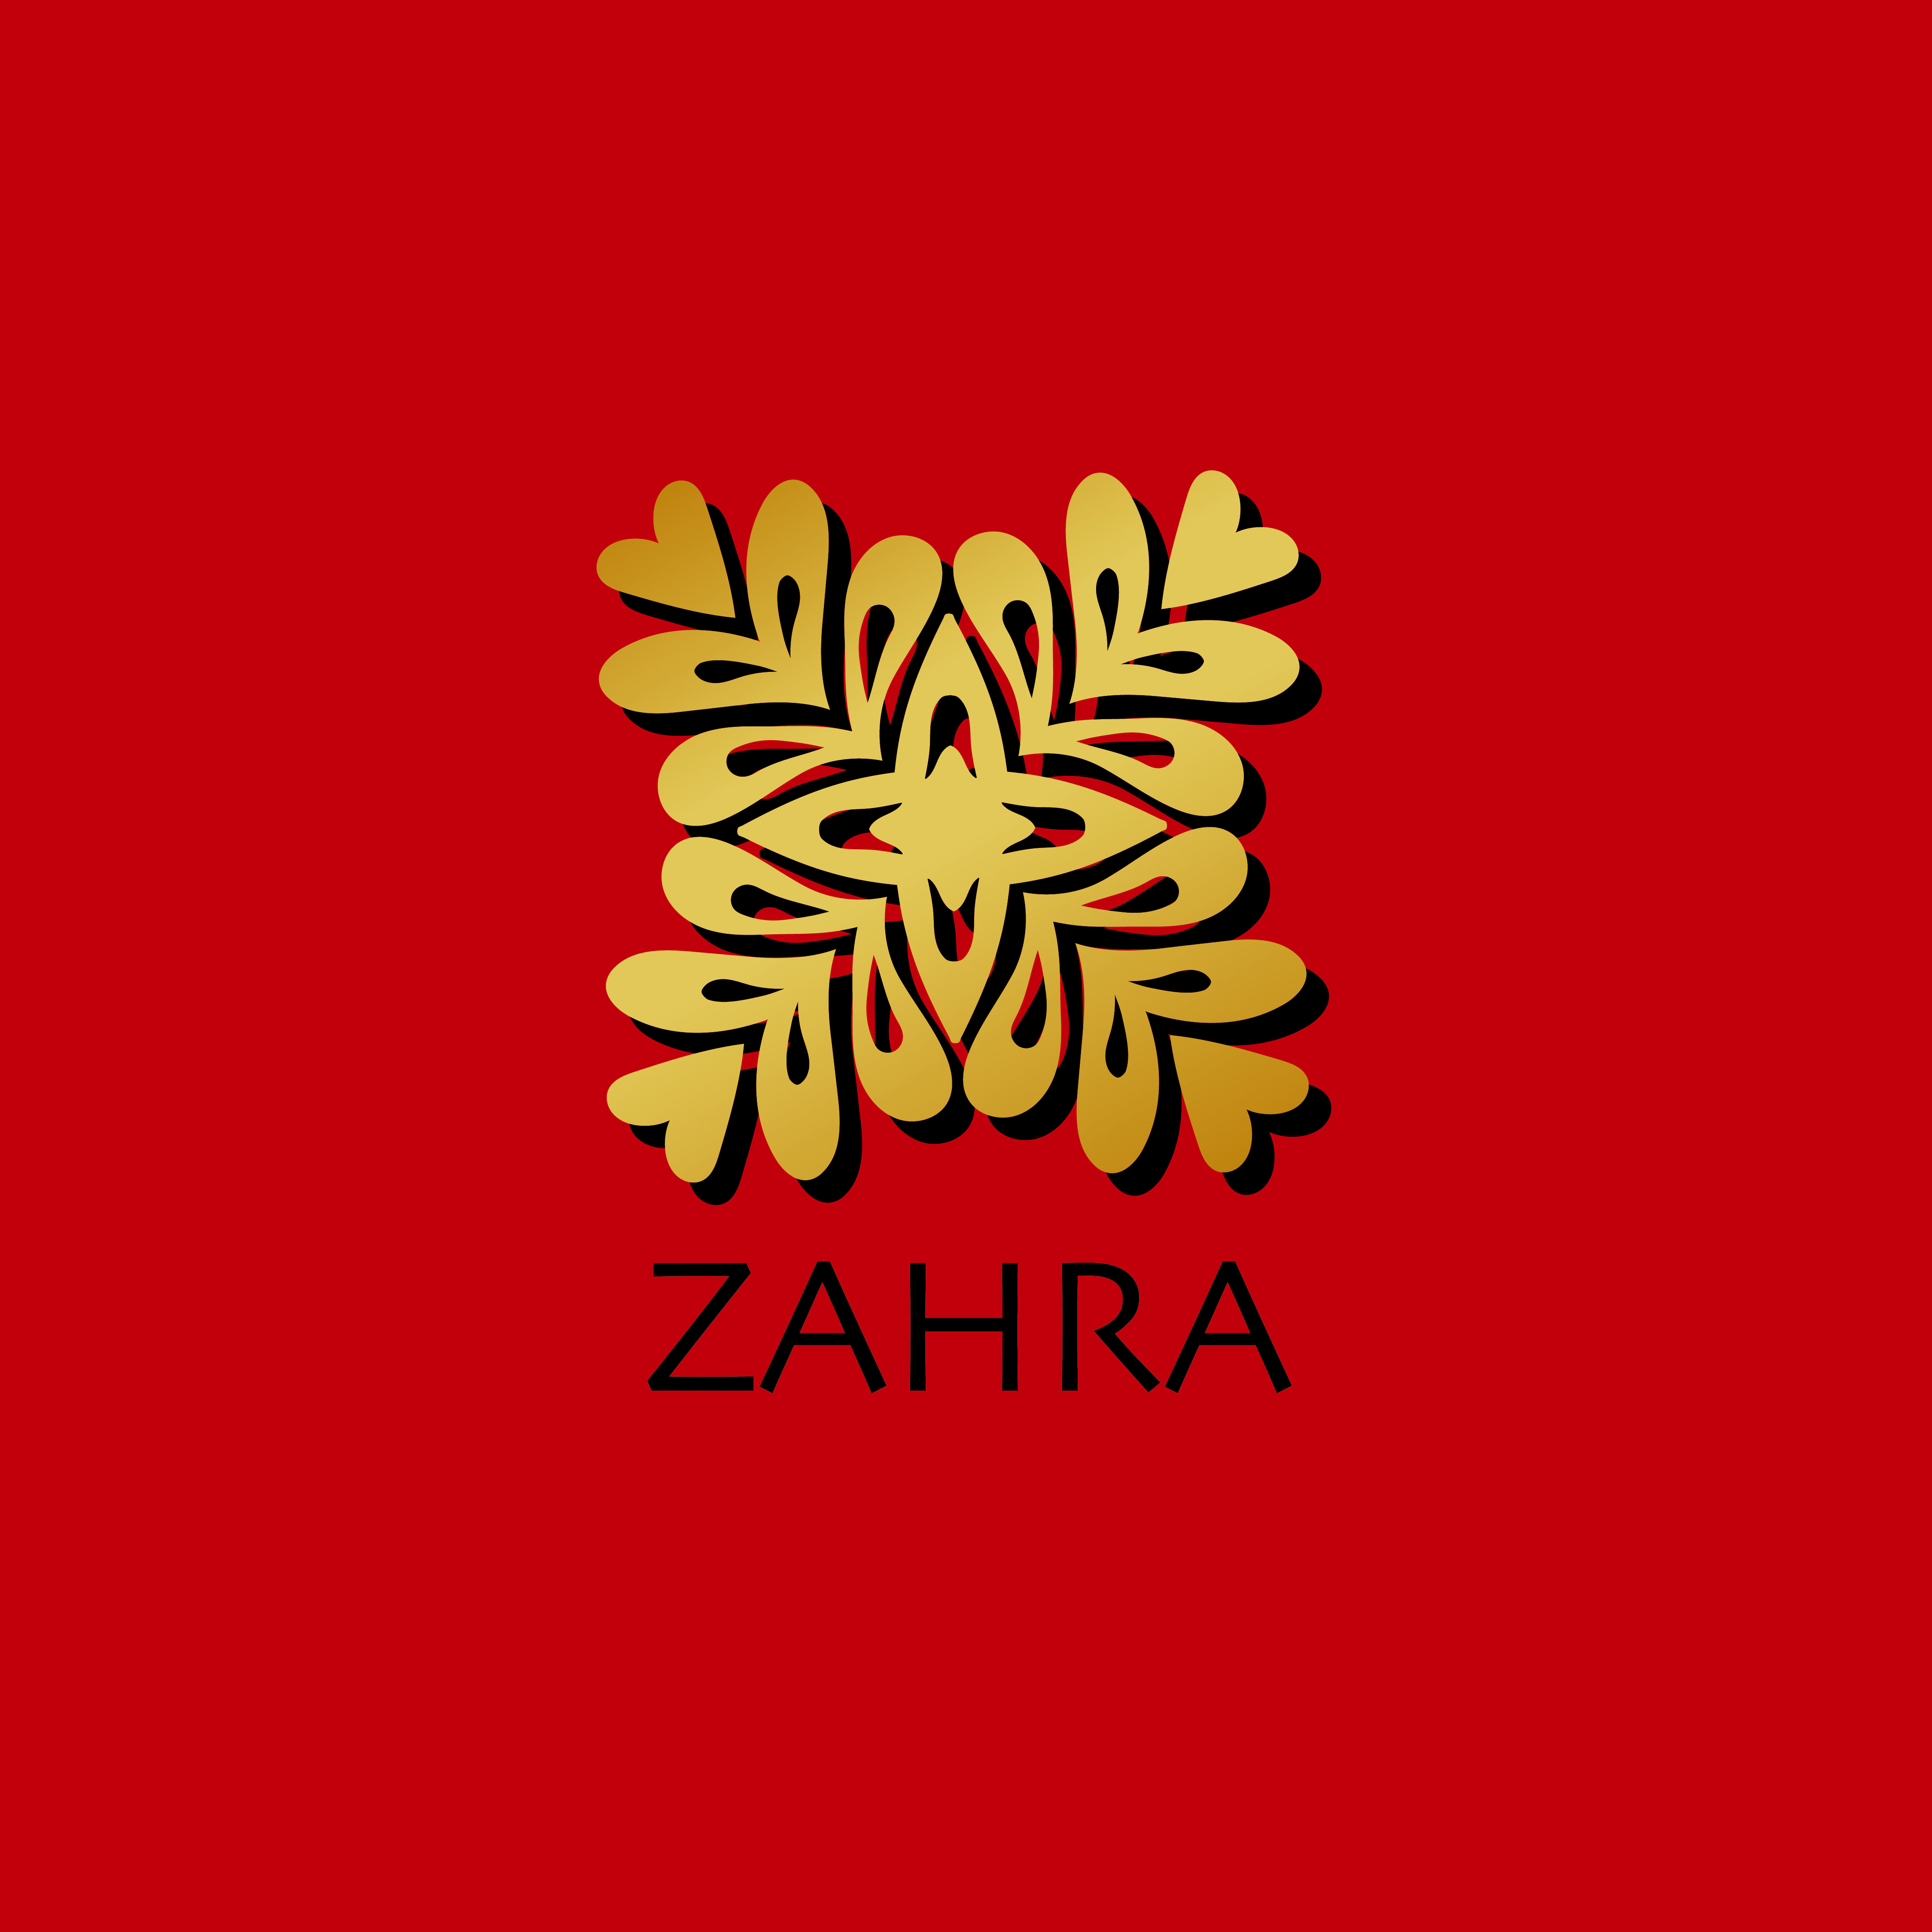 Logo example2